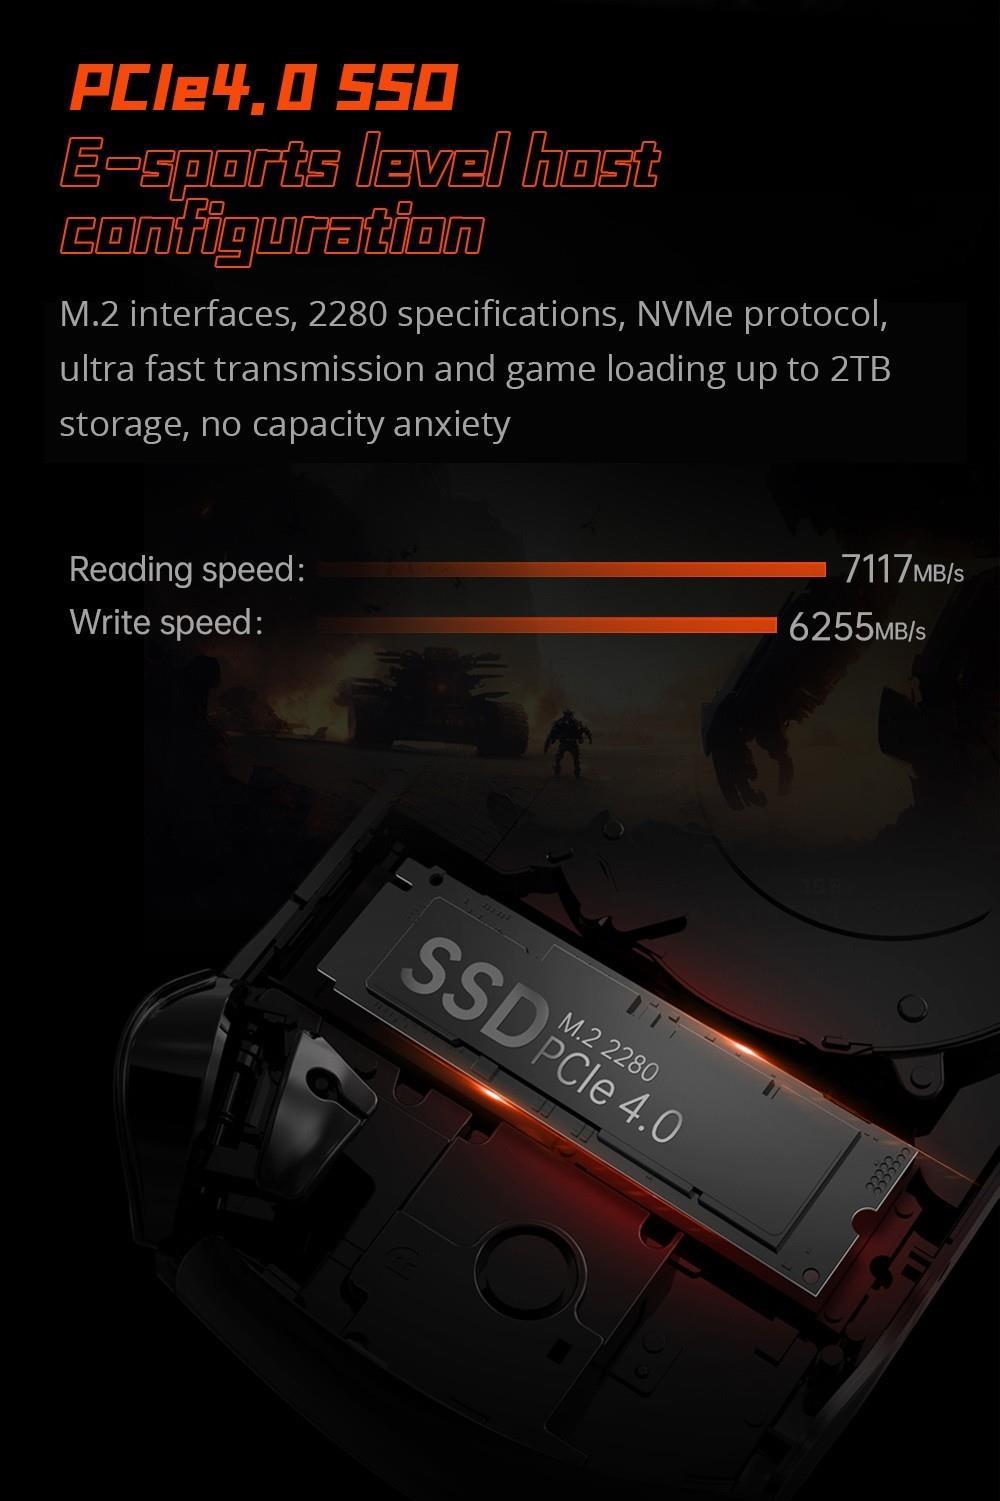 One Netbook ONEXFLY Handheld-Spielekonsole, AMD Ryzen 7 7840U, 32 GB, 1 TB, 7-Zoll-ultradünne Blende - Schwarz